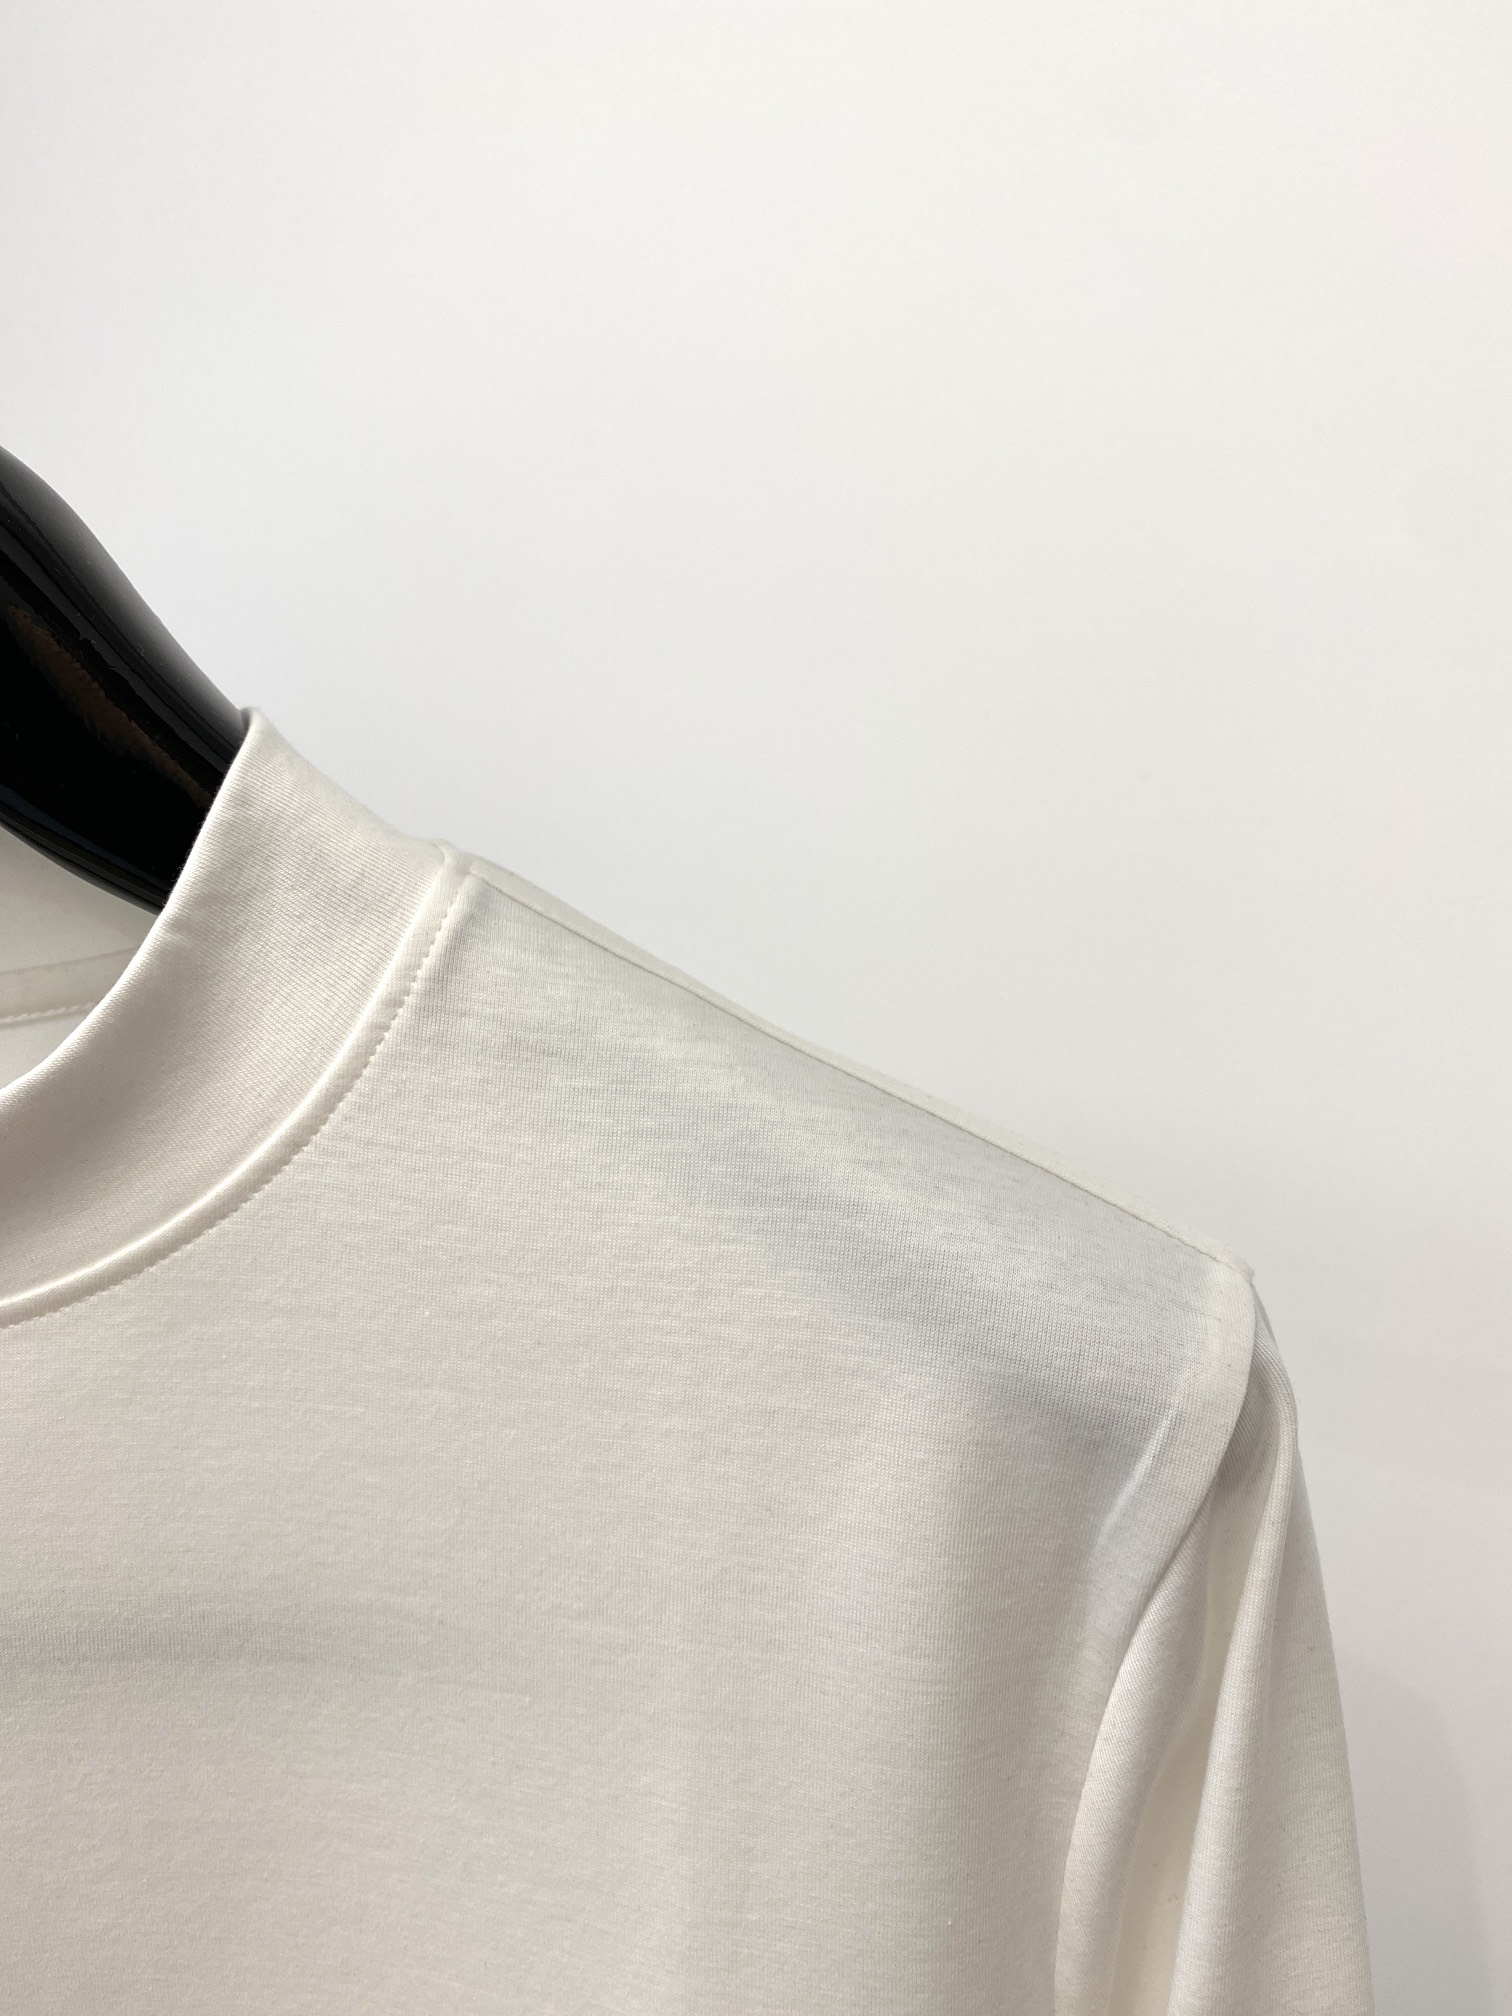 メンズ デサントtシャツ偽物 シンプル 柔らかい 長袖 トップス 純綿 3色可選 ホワイト_4